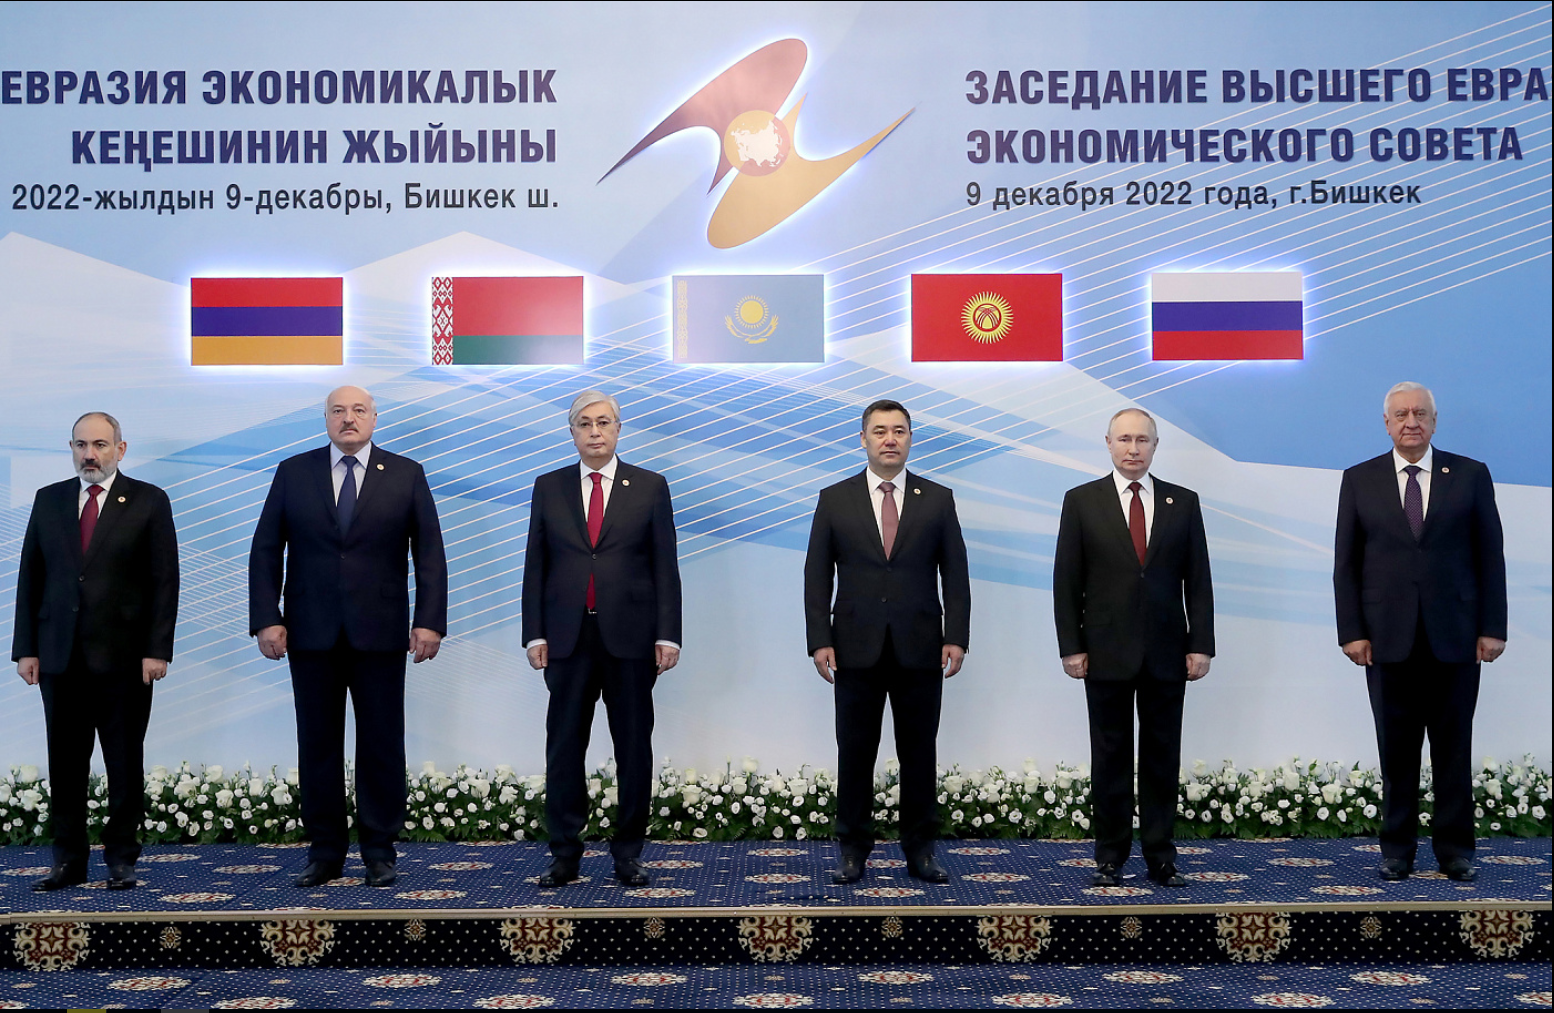 Итоги заседания Высшего Евразийского экономического совета 9 декабря 2022 г.